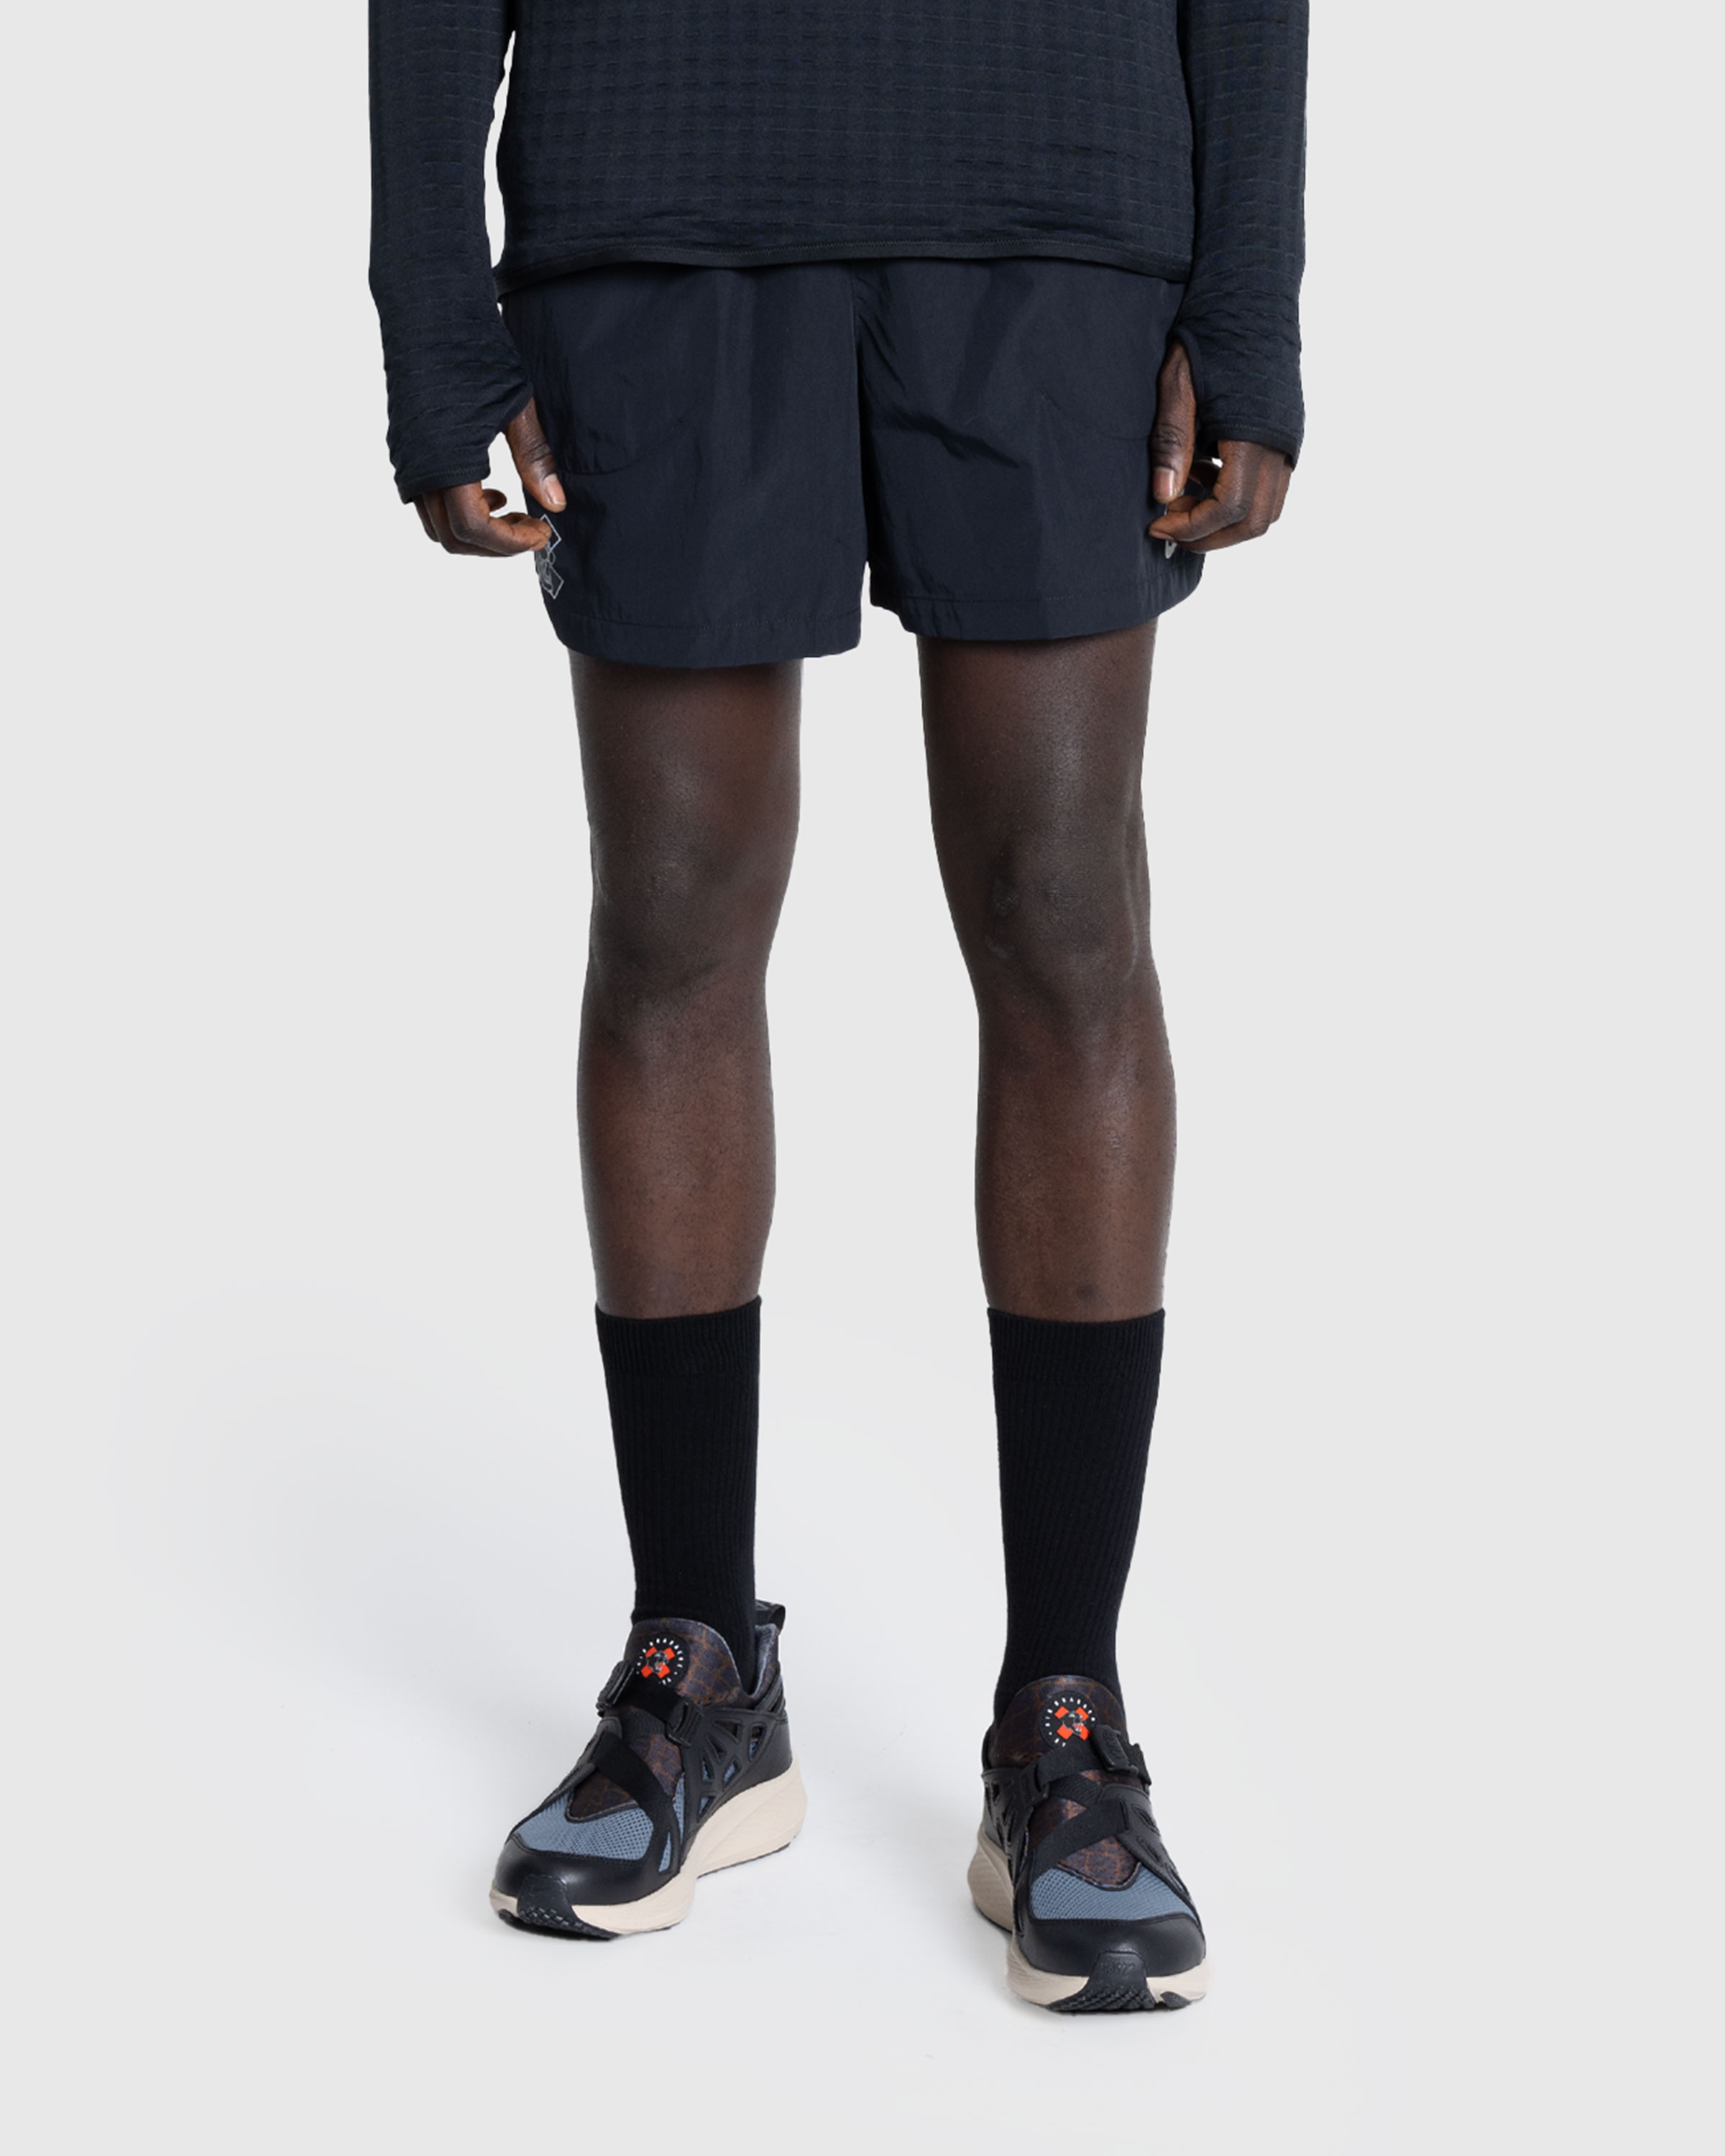 Nike x Patta – Men's Shorts Black - Active Shorts - Black - Image 2